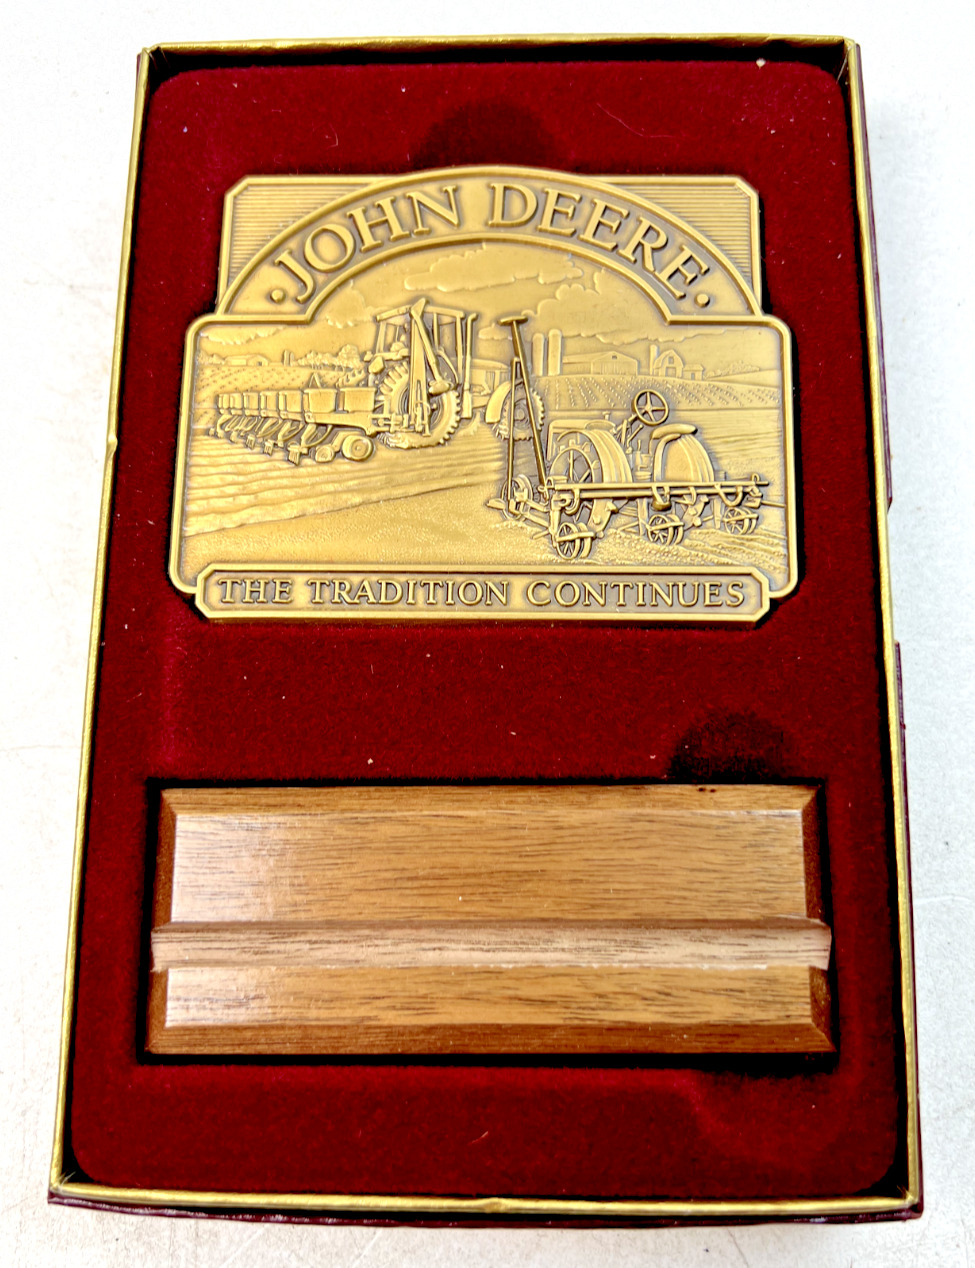 1997 John Deere Calendar Medallion - 2.5\